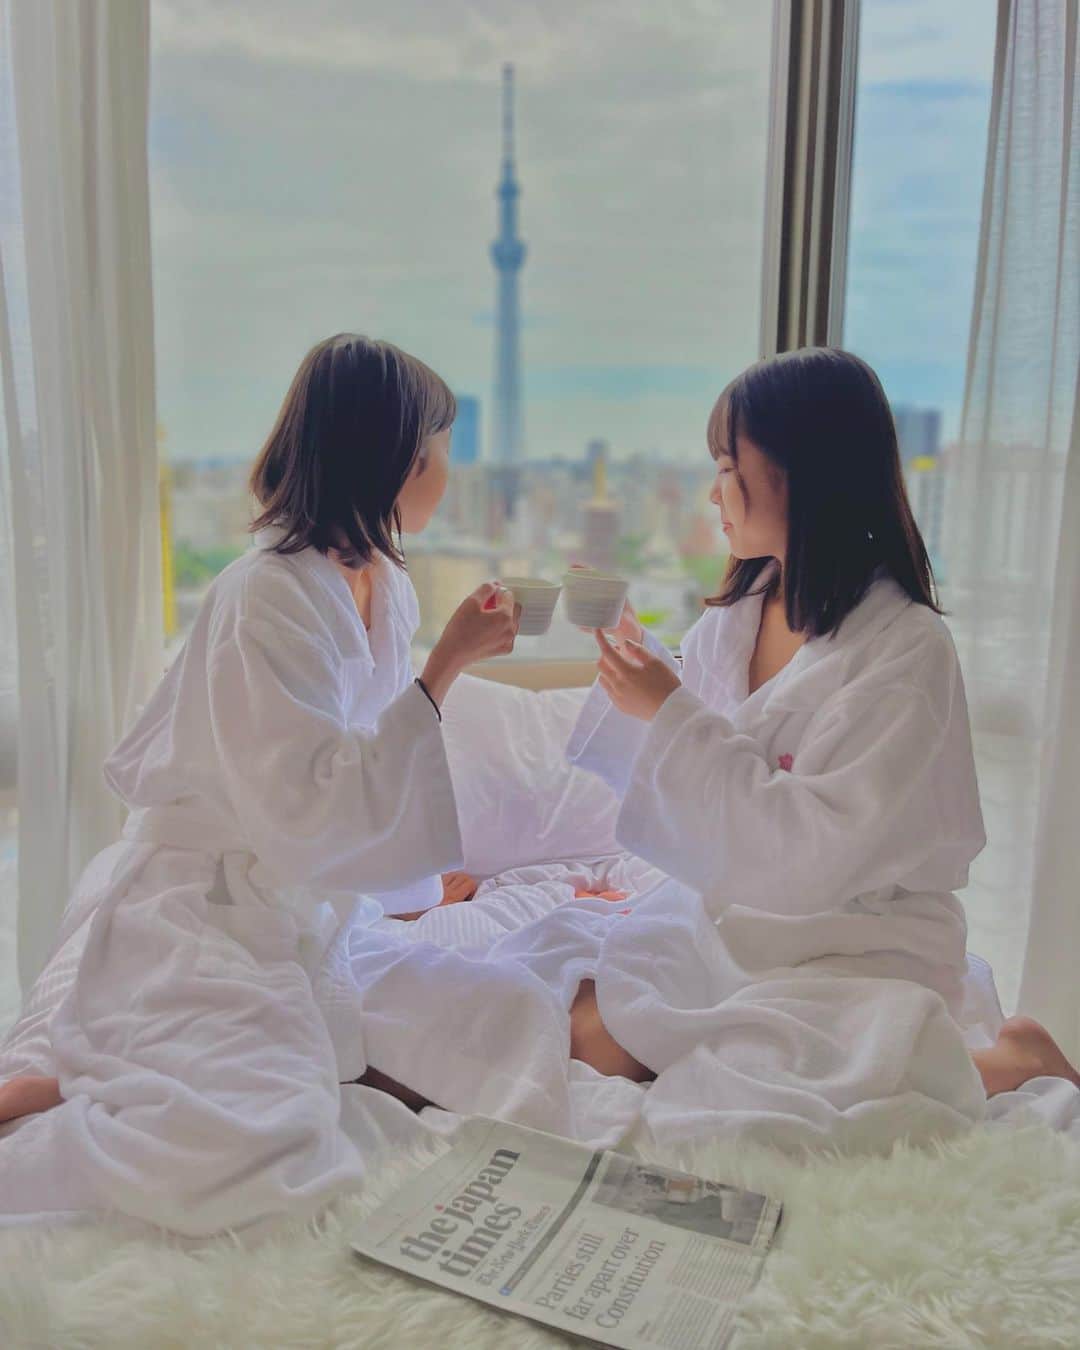 Mikaのインスタグラム：「『my lovely daughters』  娘ちゃん達がどんどん大人っぽくなってる。 私が撮る側になるのも楽しい♡   お泊まりした時に私のiPhoneで撮りました(^з^)-☆ 凄くお気に入り☆  Sena & Rio 🥰　photo by mom   #浅草ビューホテル #東京スカイツリー #撮影スポット  #親子モデル  #スカイツリーのある風景  #ラグジュアリーホテル #女子会ホテル #被写体モデル  #撮影モデル  #ポートレート撮影  #家族旅行  #家族写真 #撮影が好き  #写真好きな人と繋がりたい  #写真撮ってる人と繋がりたい  #浅草観光  #優雅な朝 #母と娘  #バスローブ女子  #フォトジェニック #お泊まり女子会 #東京家族 #朝の時間  #被写体になります  #iphonephotography  #asakusatokyo  #asakusavewhotel  #japanesegirls  #asiangirls  #tokyohotel」